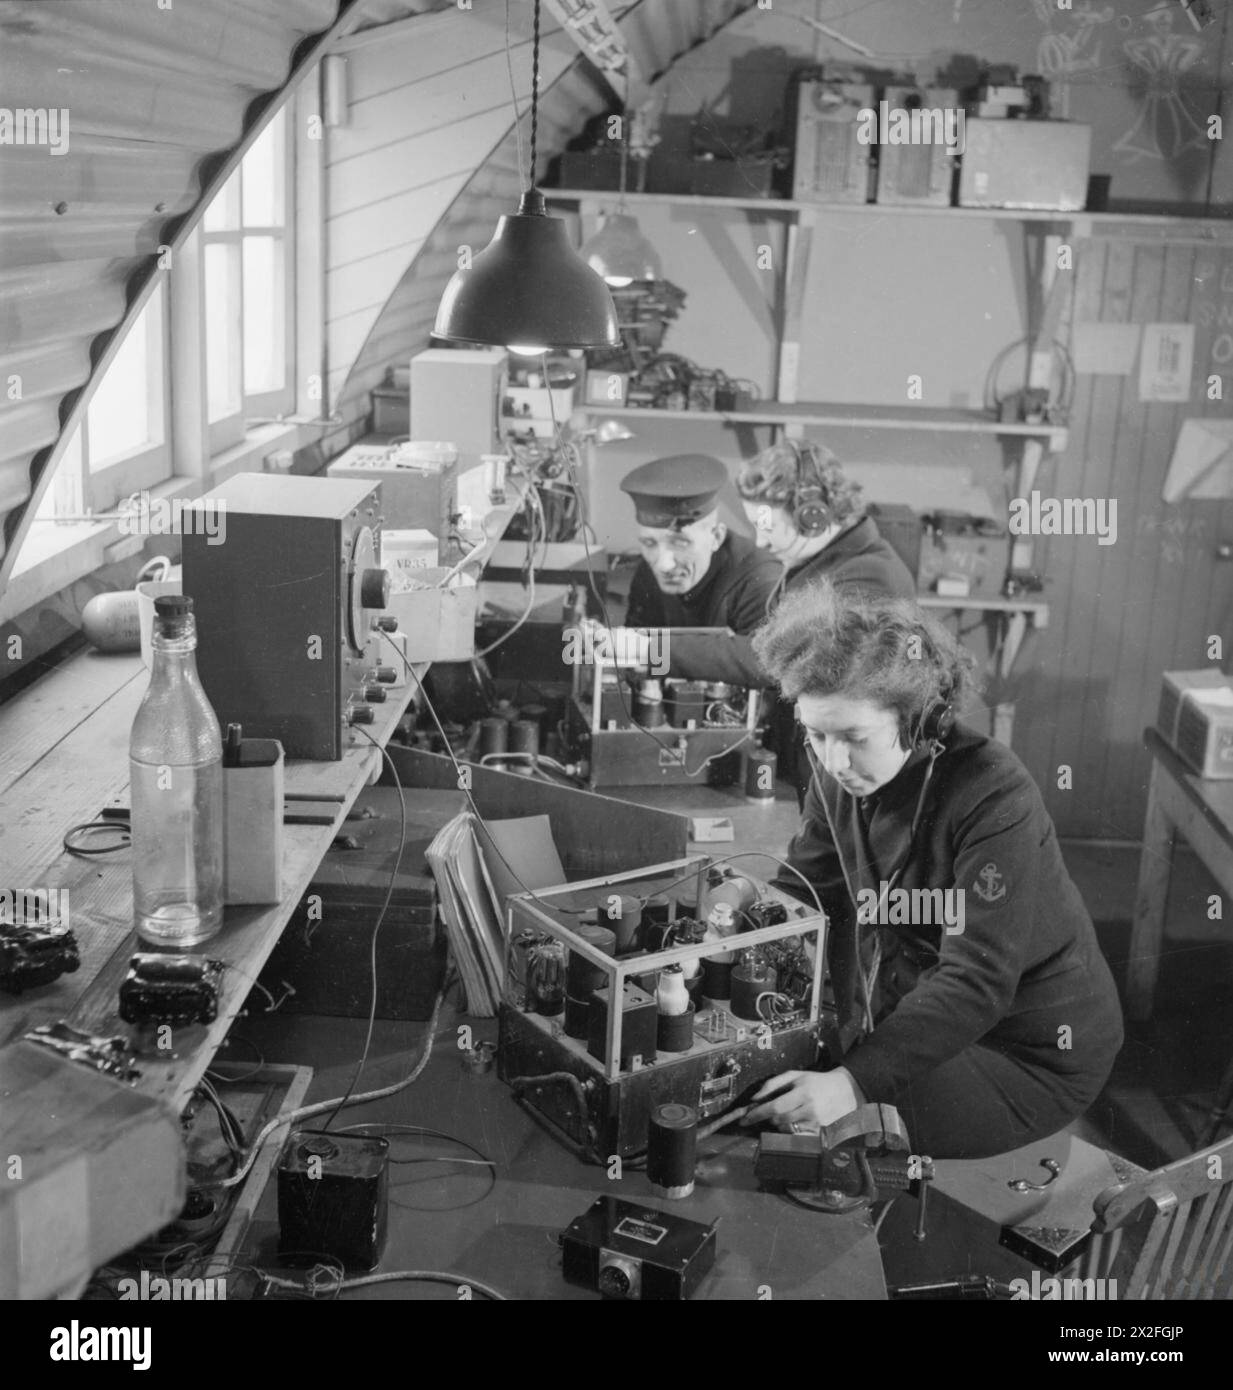 ROYAL MARINESERVICE FÜR FRAUEN: MIT DER FLOTTENLUFTWAFFE, SCHOTTLAND, 1943 - zwei Wren Radio Mechanics arbeiten mit einer Marineschifffahrtsklasse, um Funkempfänger in der Radiowerkstatt Women's Royal Naval Service zu testen Stockfoto